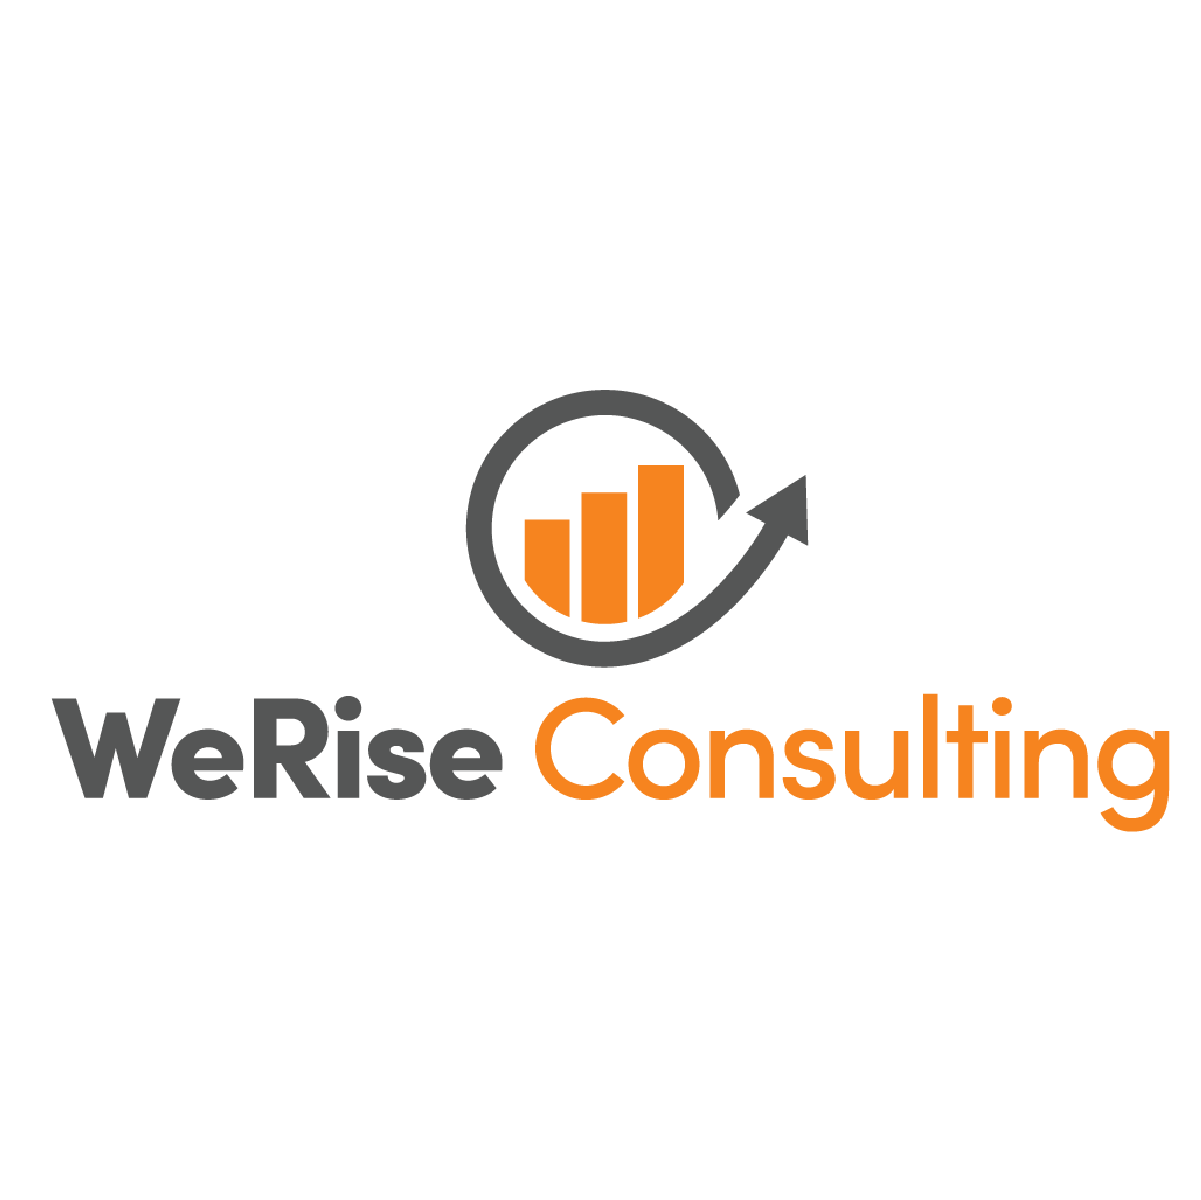 WeRise Consulting logo